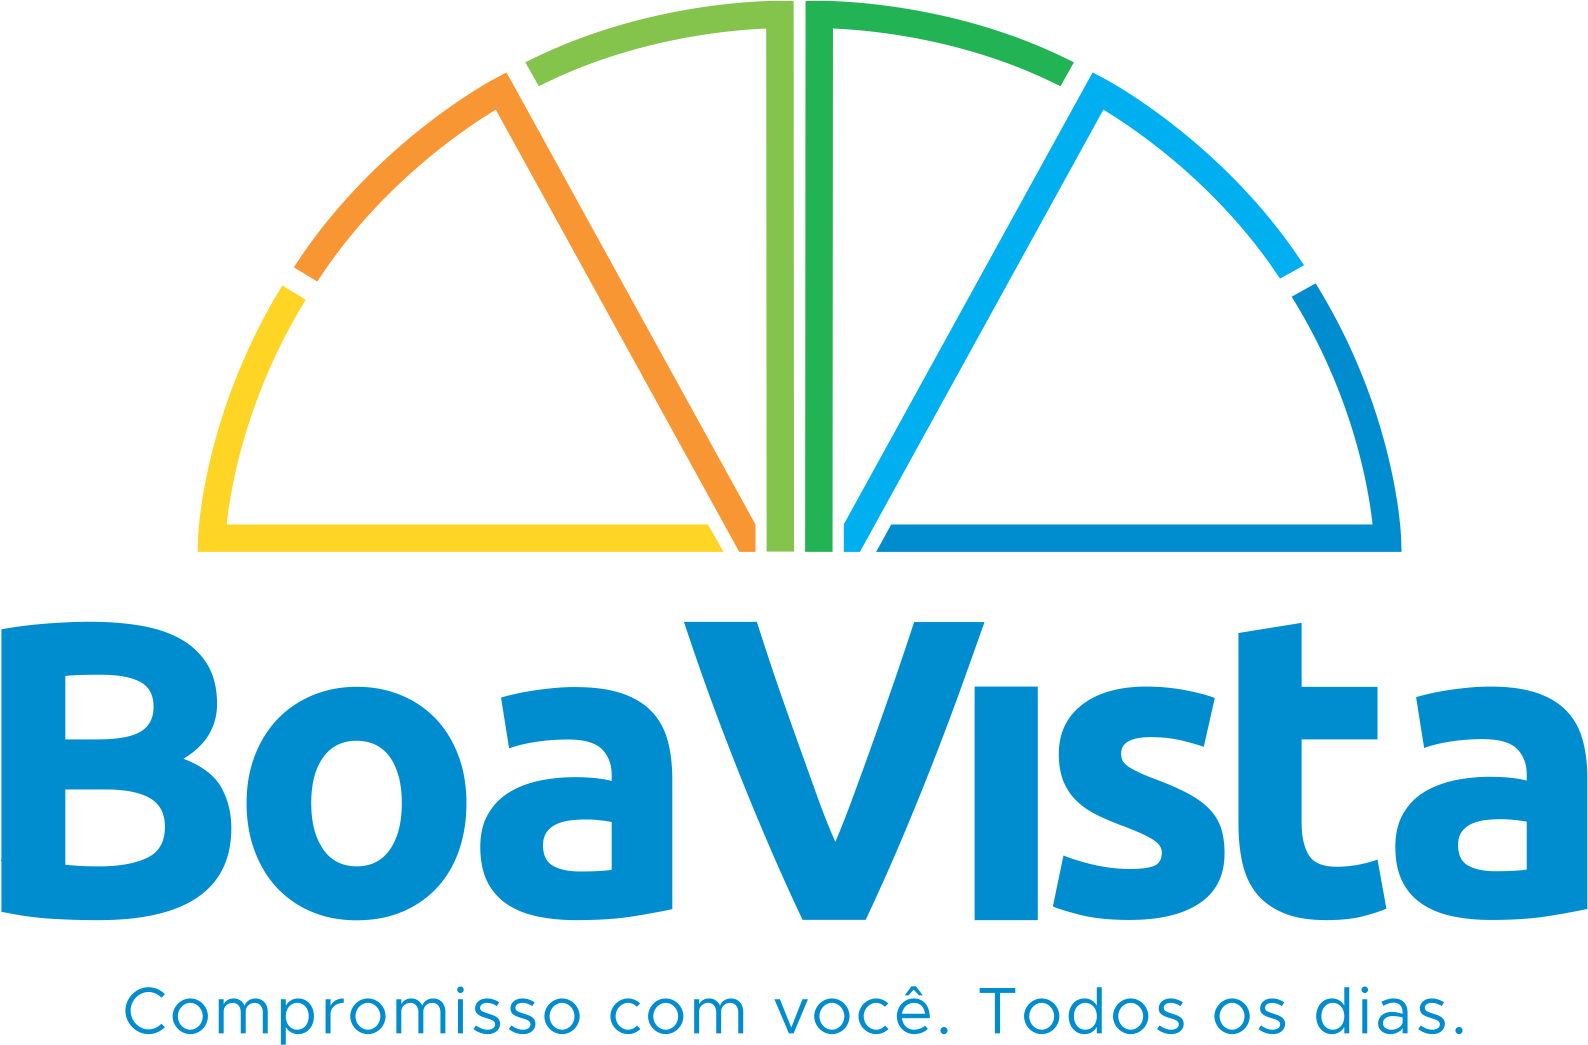 Prefeitura Municipal de Boa Vista, Trabalhar e Cuidar das pessoas